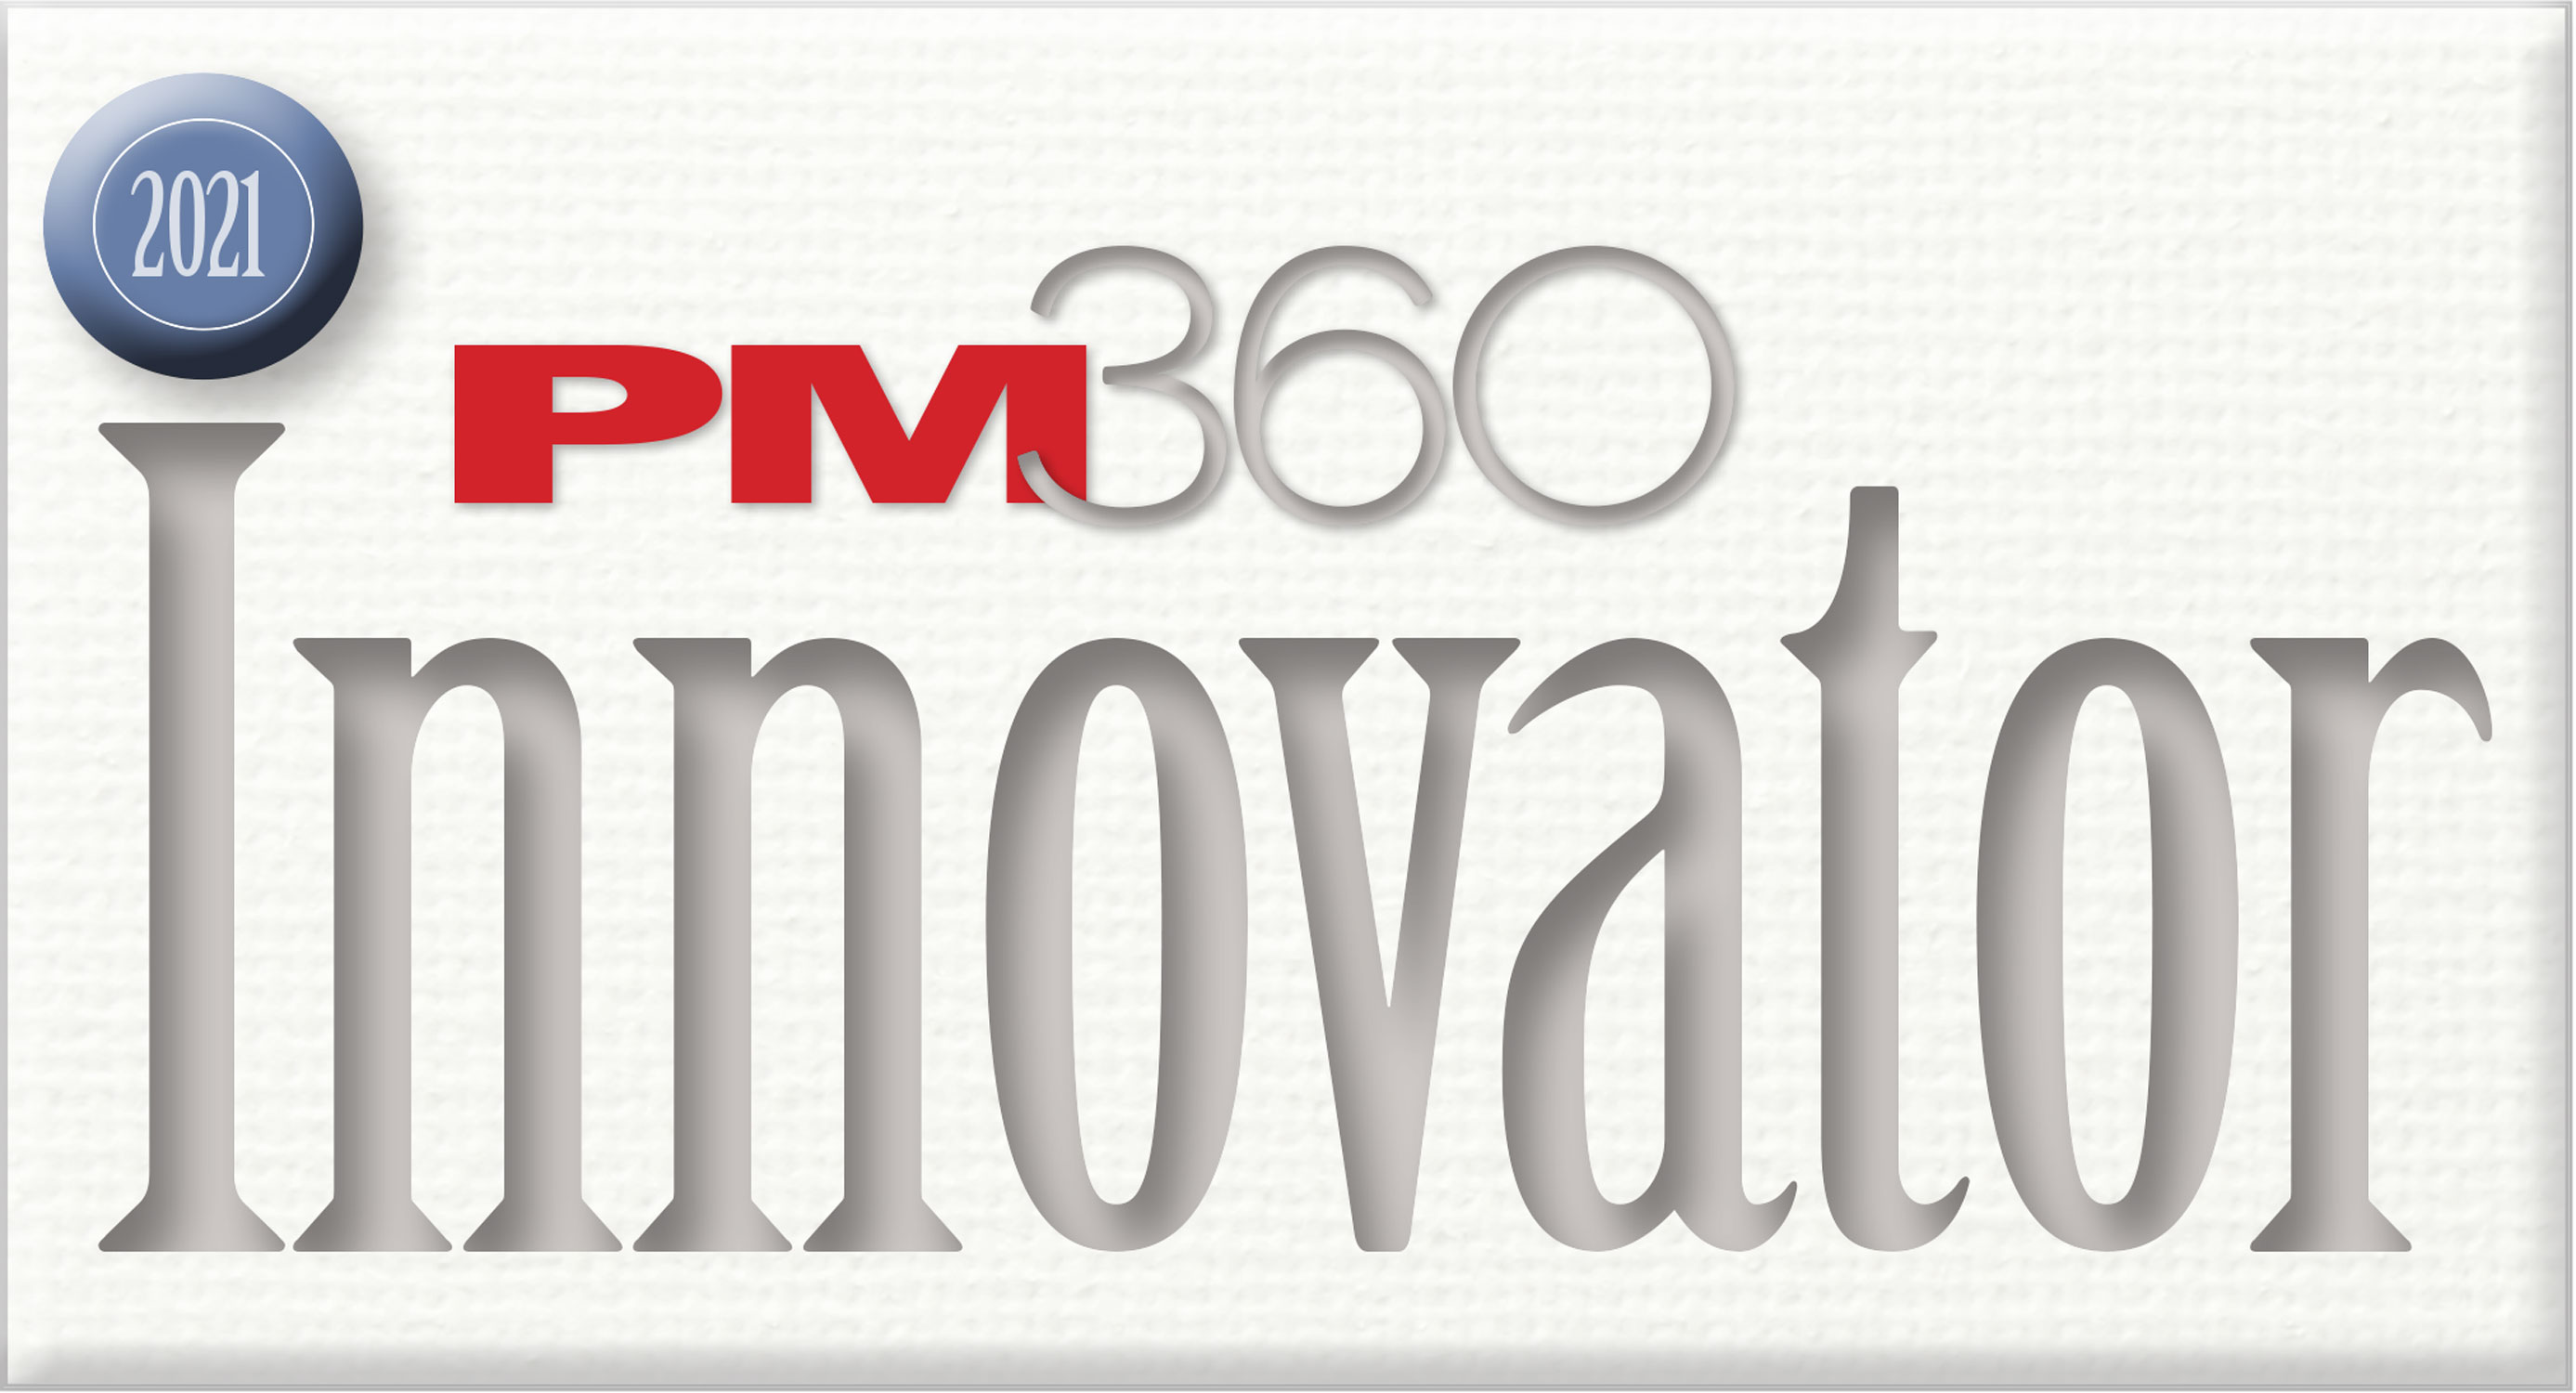 2021 PM360 Innovation Logo